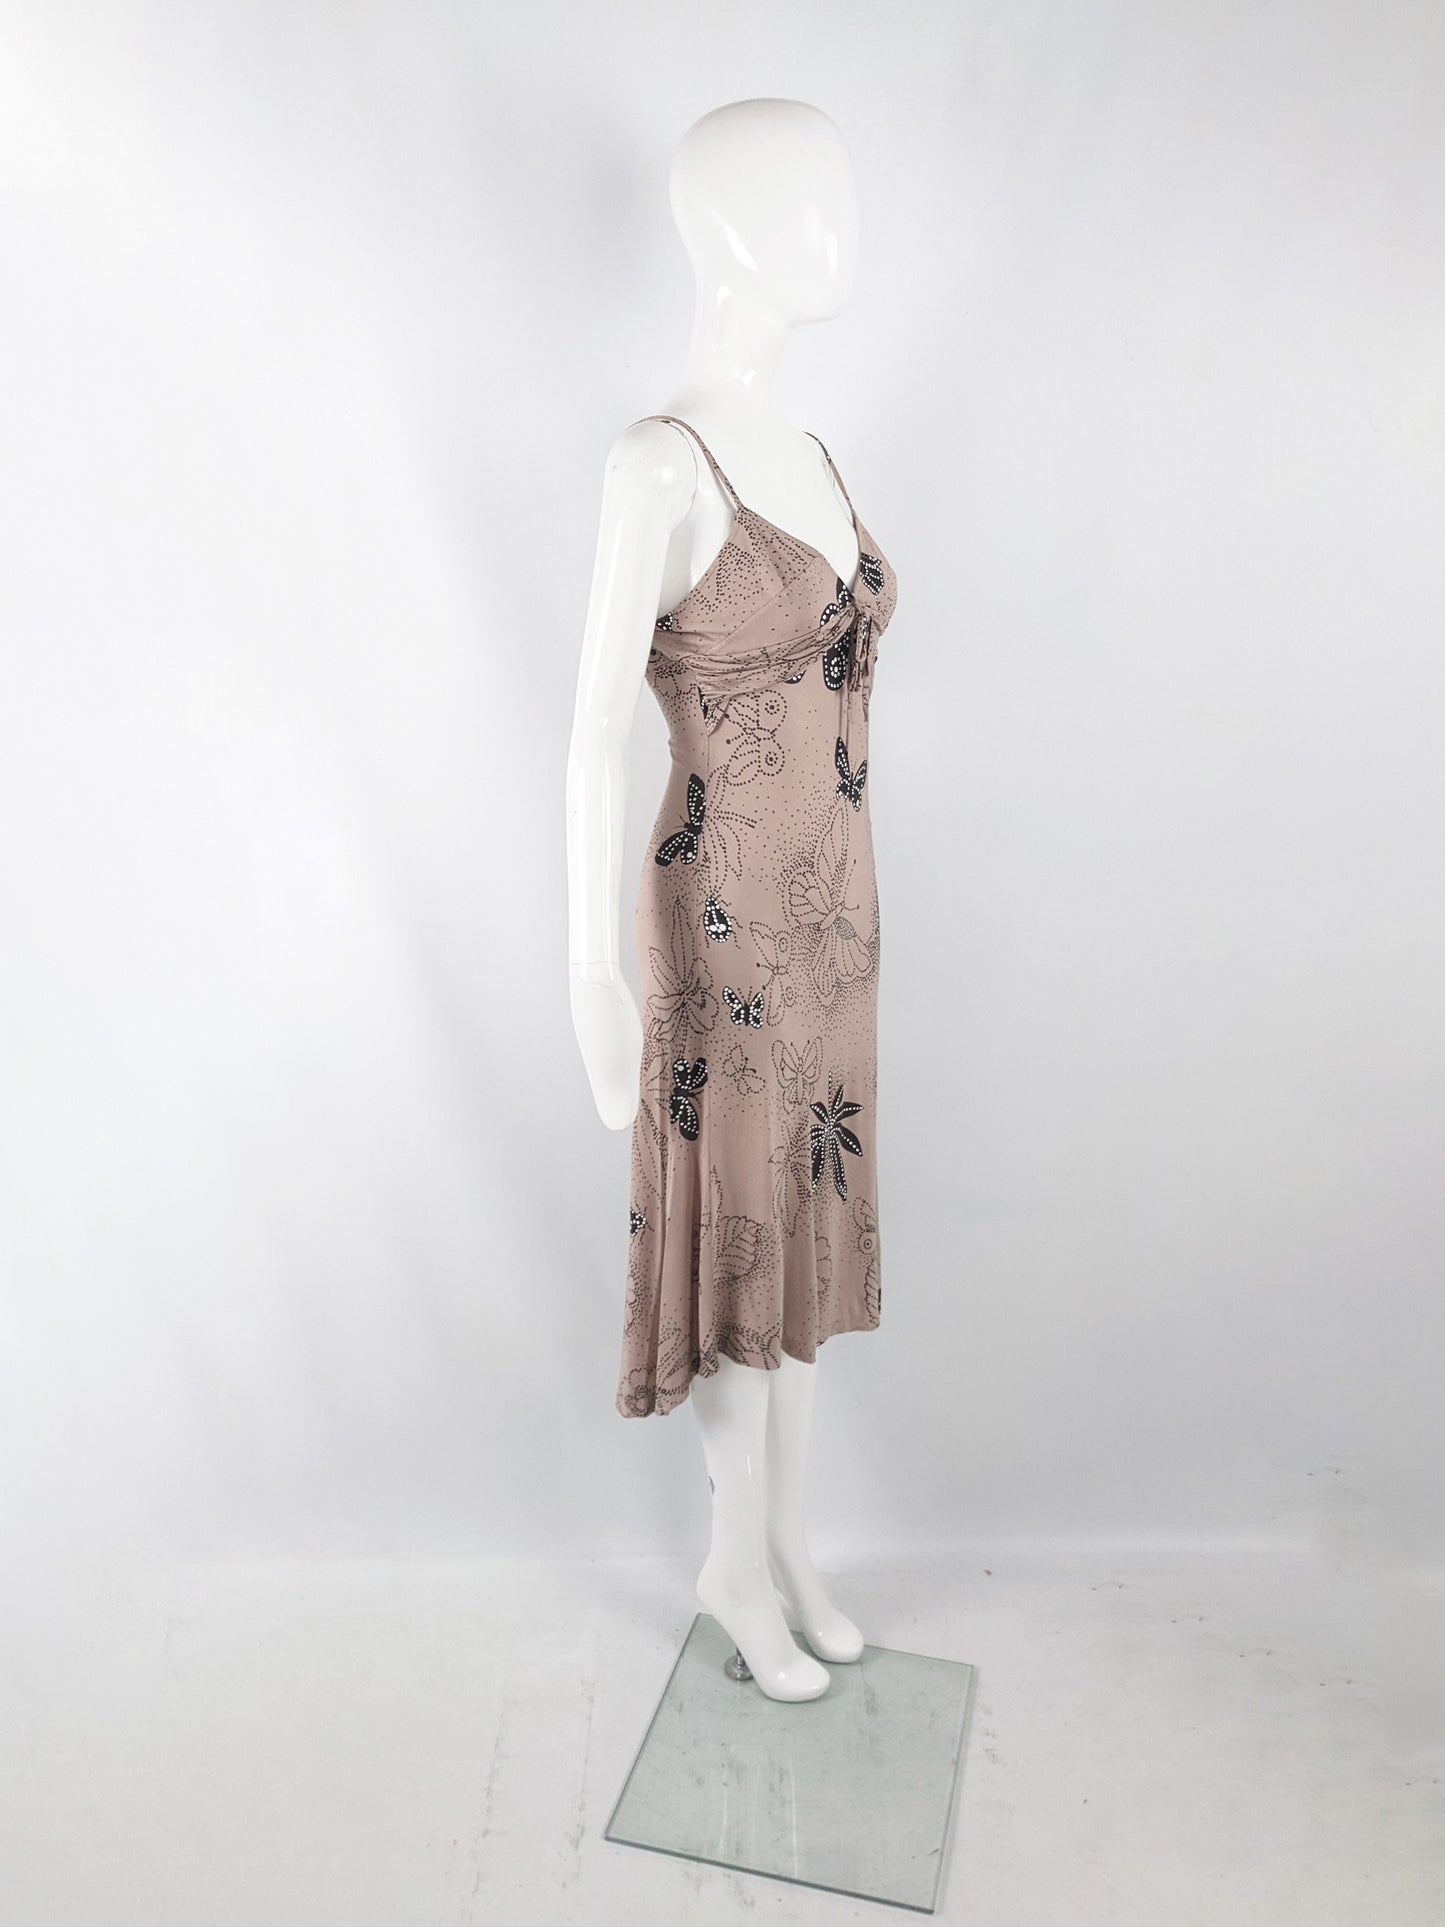 Joseph Vintage Bias Cut Rayon Slip Dress, 1990s